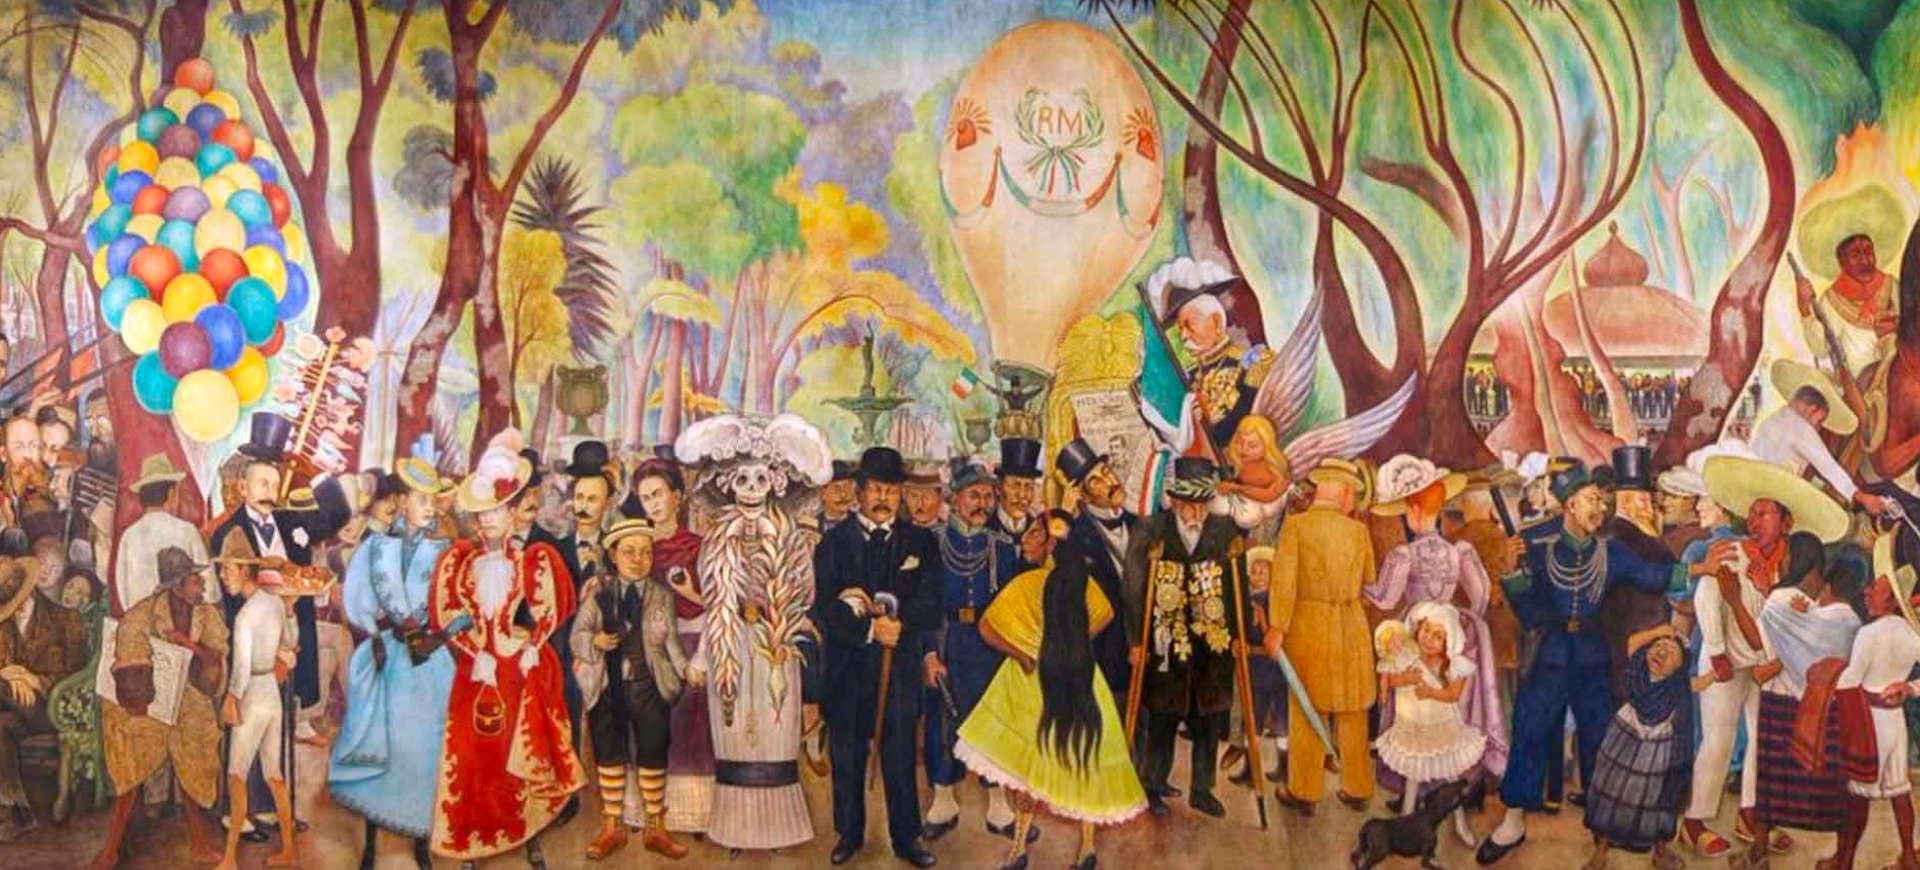 Museo Mural Diego Rivera | INBA - Instituto Nacional de Bellas Artes